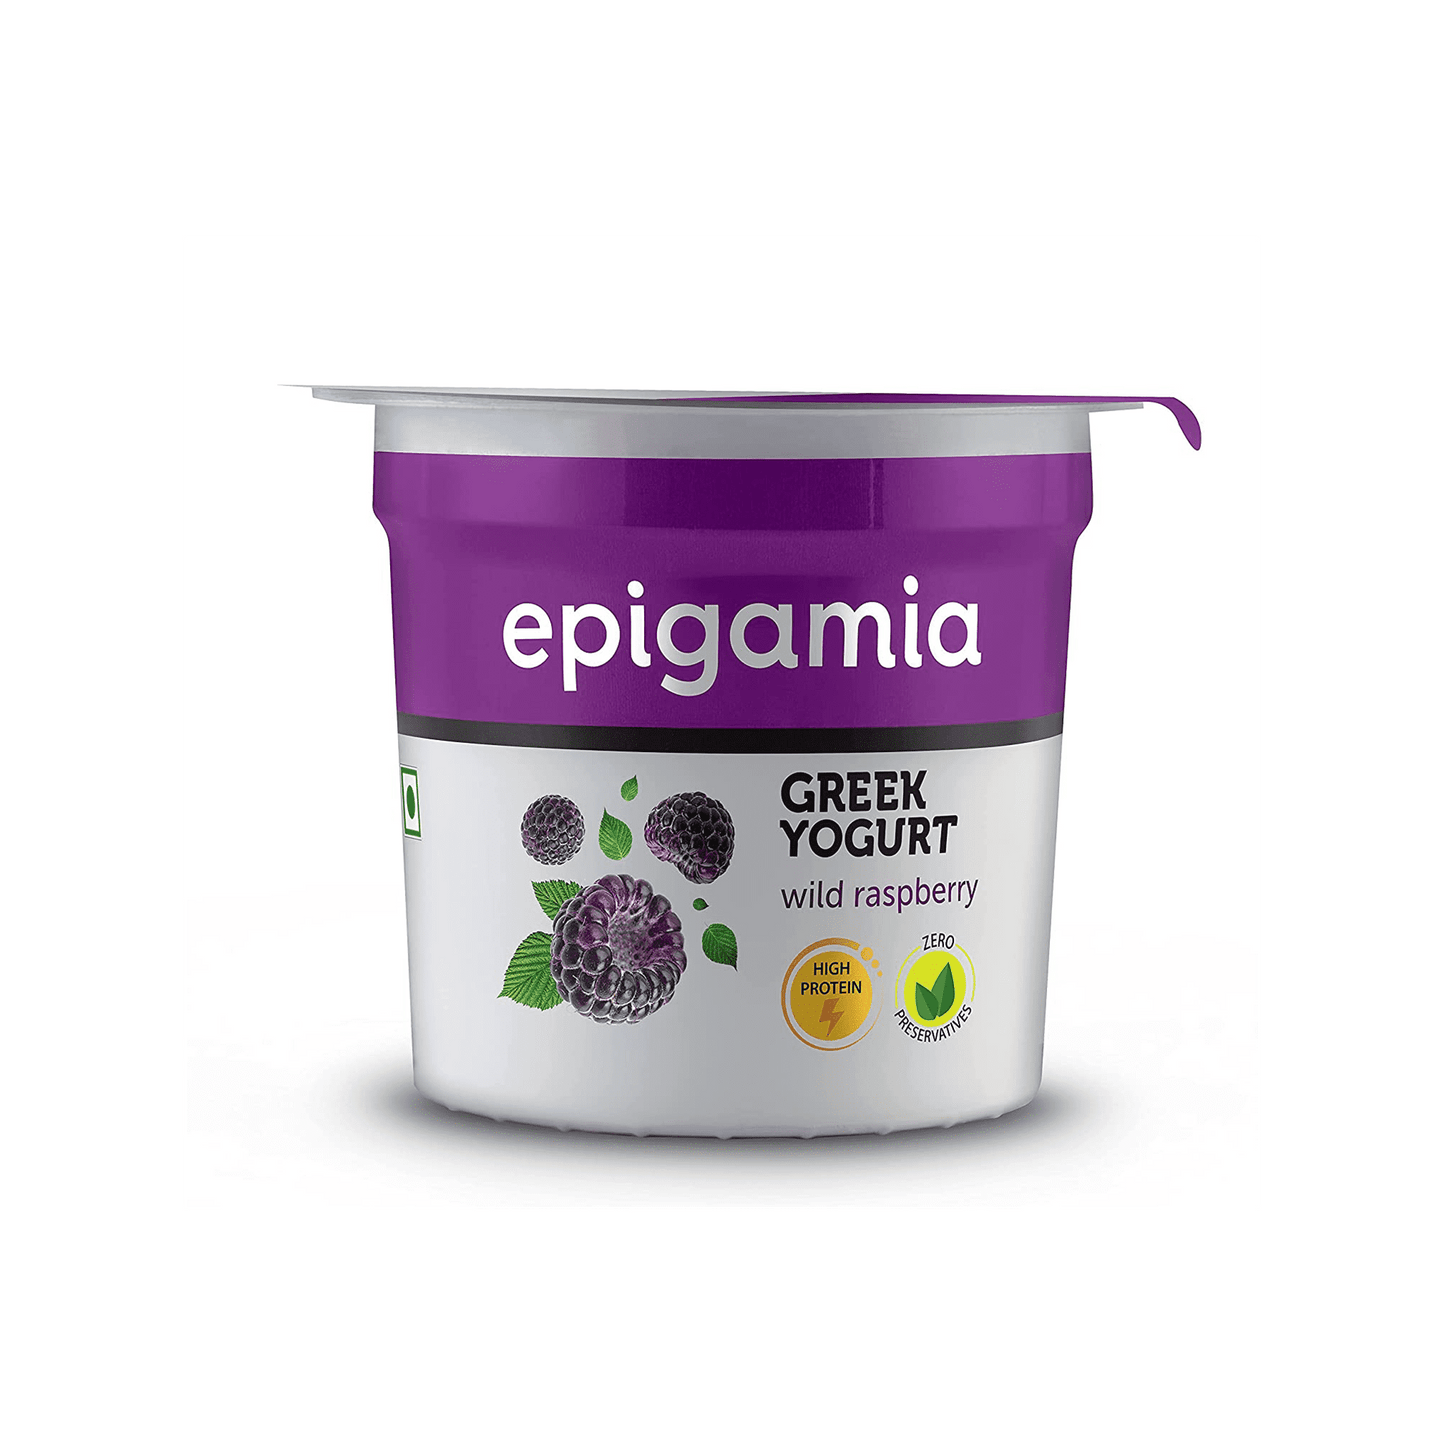 Epigamia Wild Raspberry Greek Yogurt.